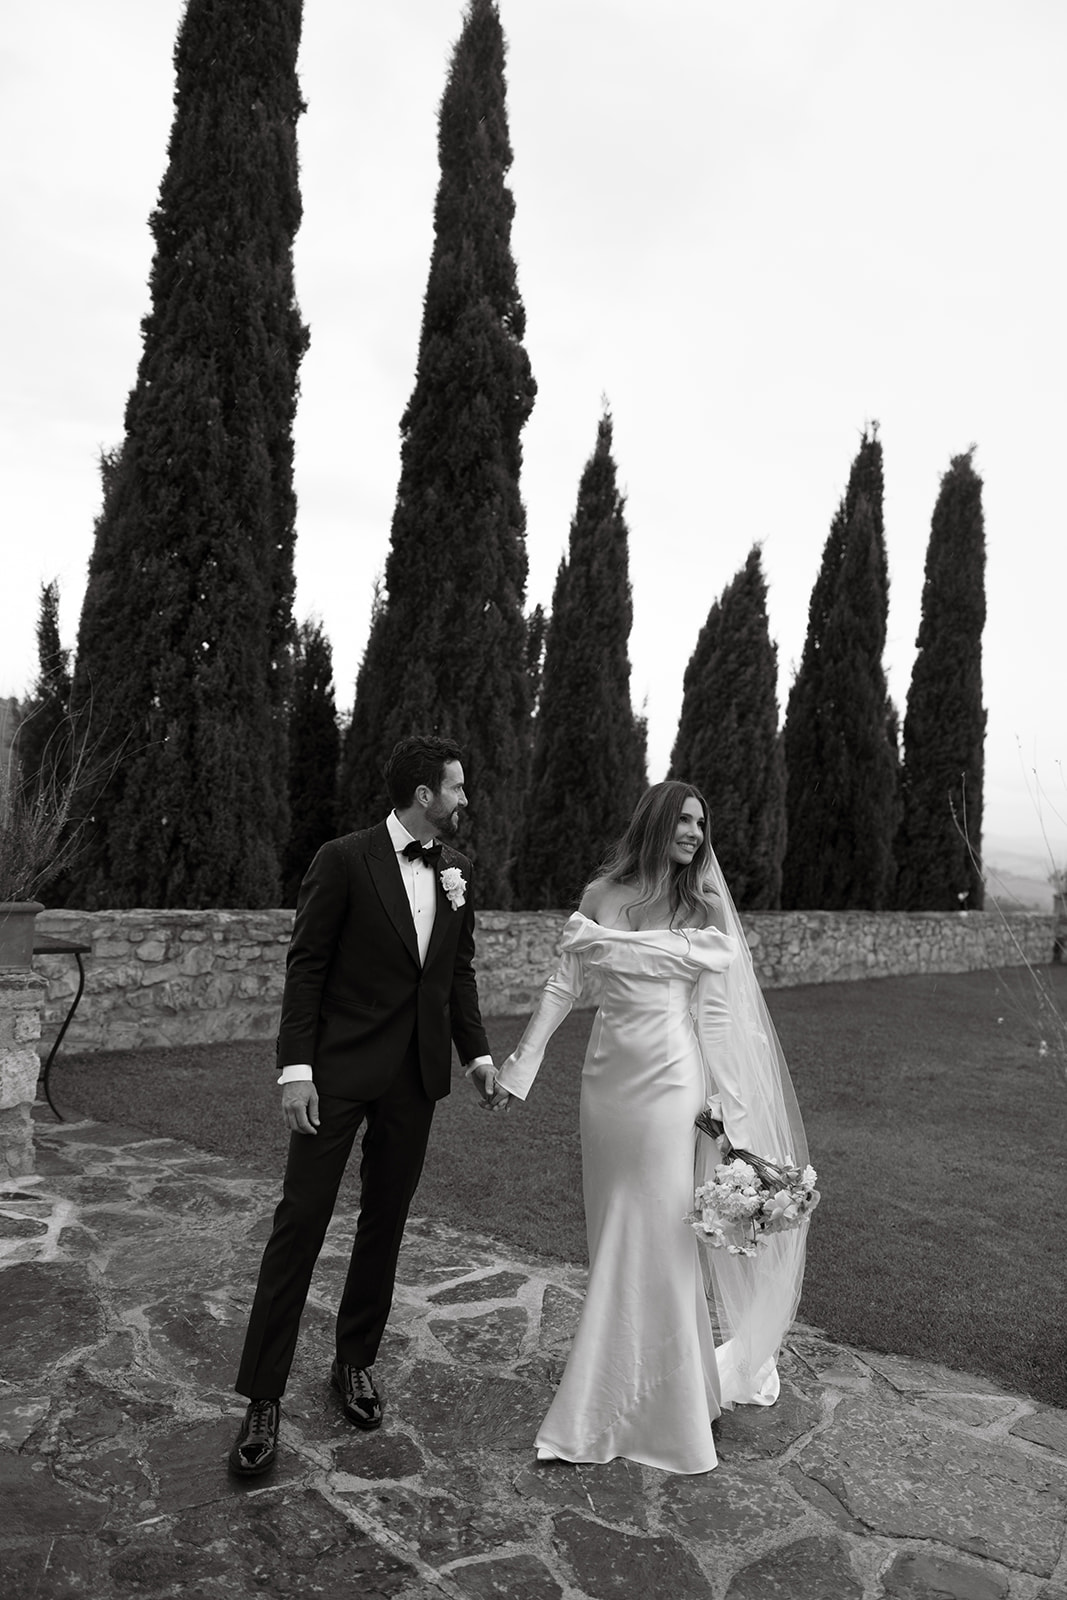 Castello Di Vicarello Wedding in Tuscany 
Tuscany wedding at Castello Di Vicarello